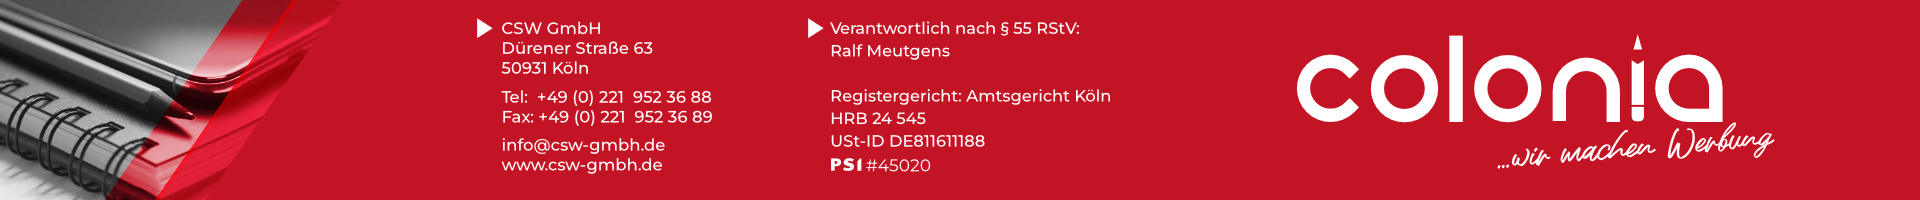 CSW GmbH Köln, Werbemittel, Colonia, Ralf Meutgens, Köln Lindenthal